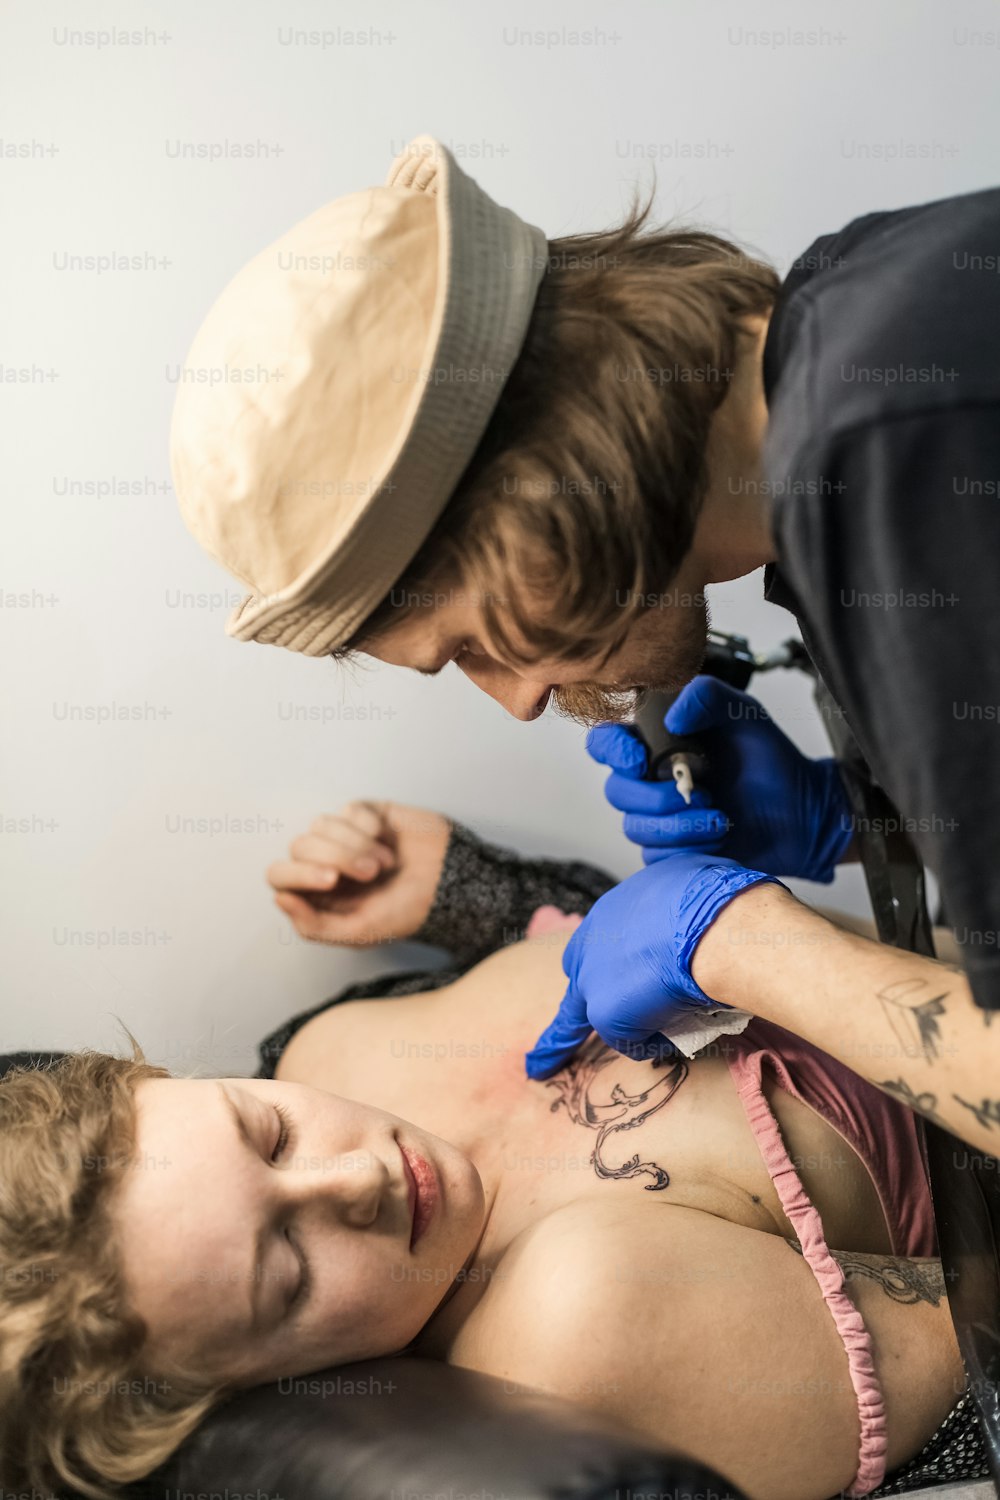 a woman getting a tattoo done by a tattooist